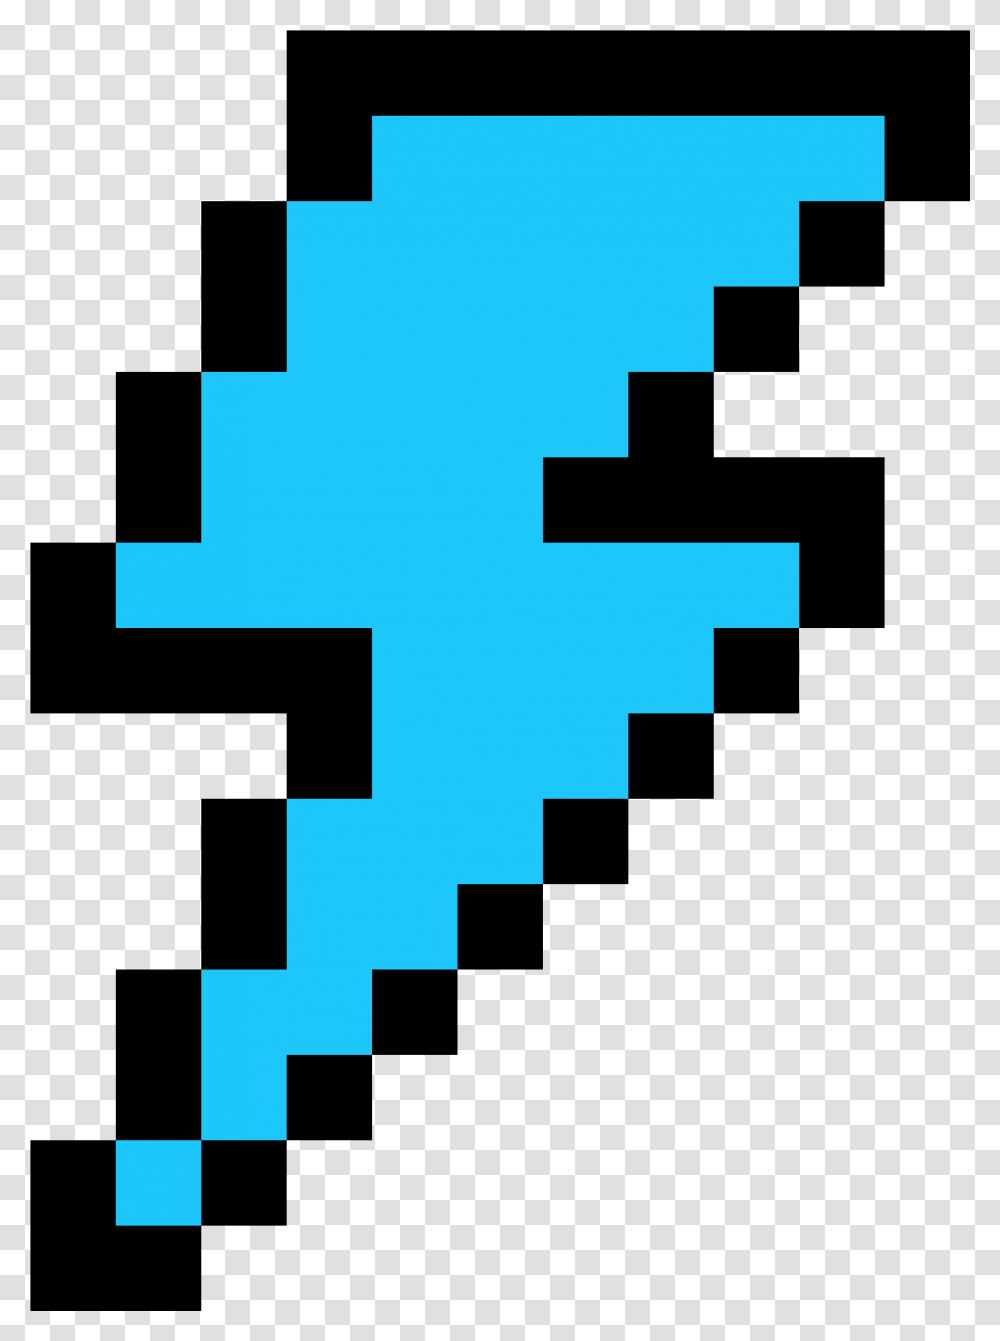 Download Lightning Bolt Lightning Pixel Art Image With Lightning Bolt Pixel Art, Cross, Symbol, Pac Man, Logo Transparent Png